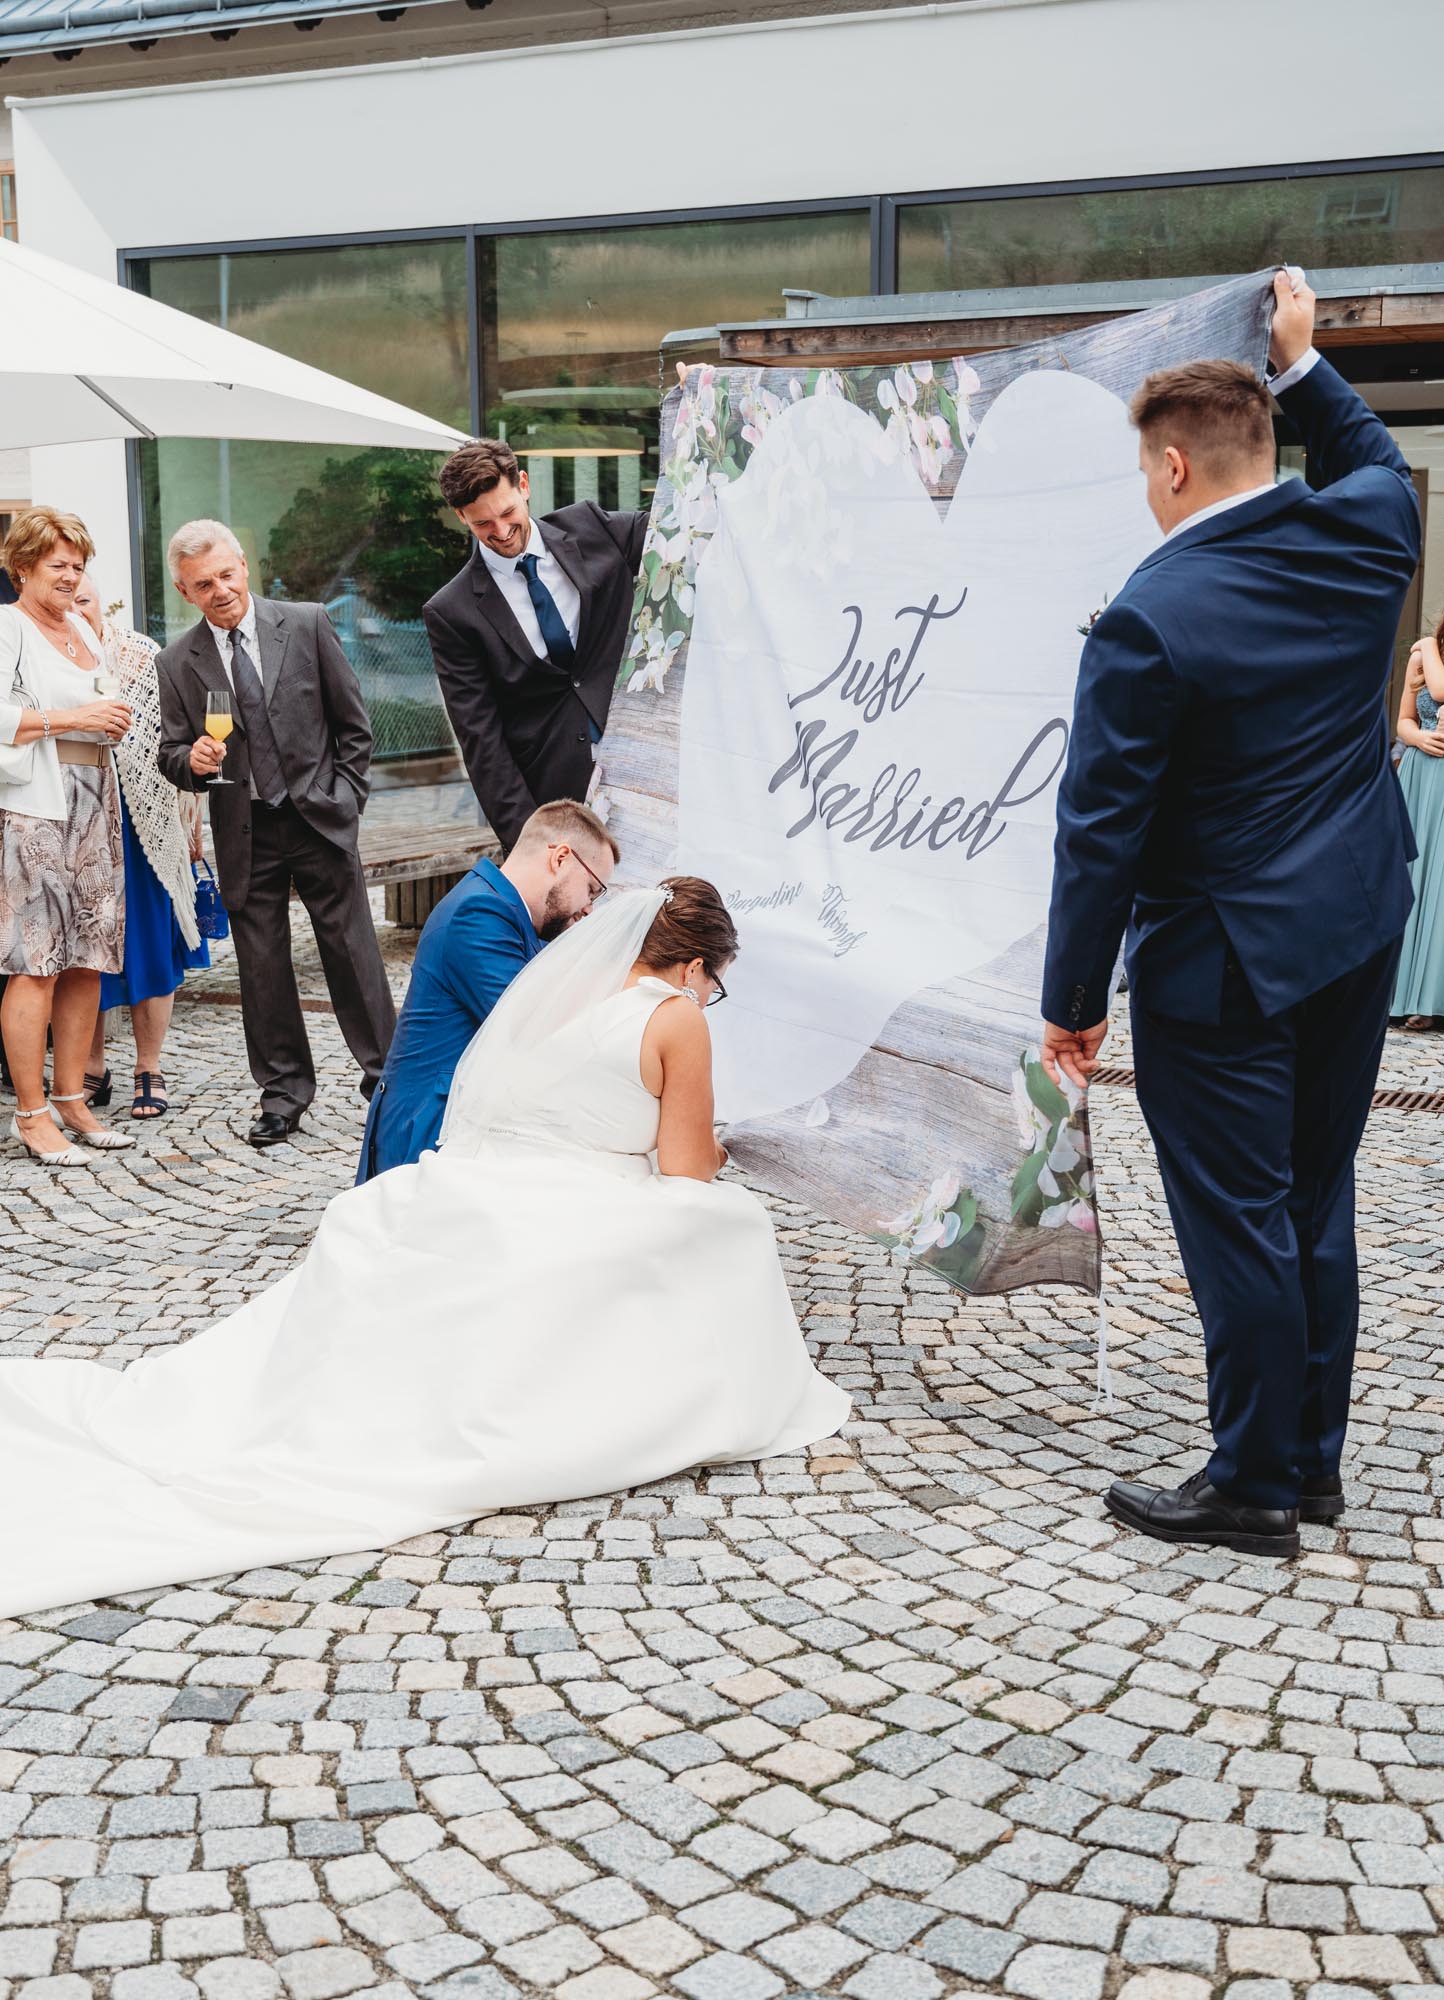 Hochzeitsfotos_Hochzeitsreportage in Wien_Feier_Brautpaar bekommt Aufgabe das Herz aus dem Tuch zu schneiden